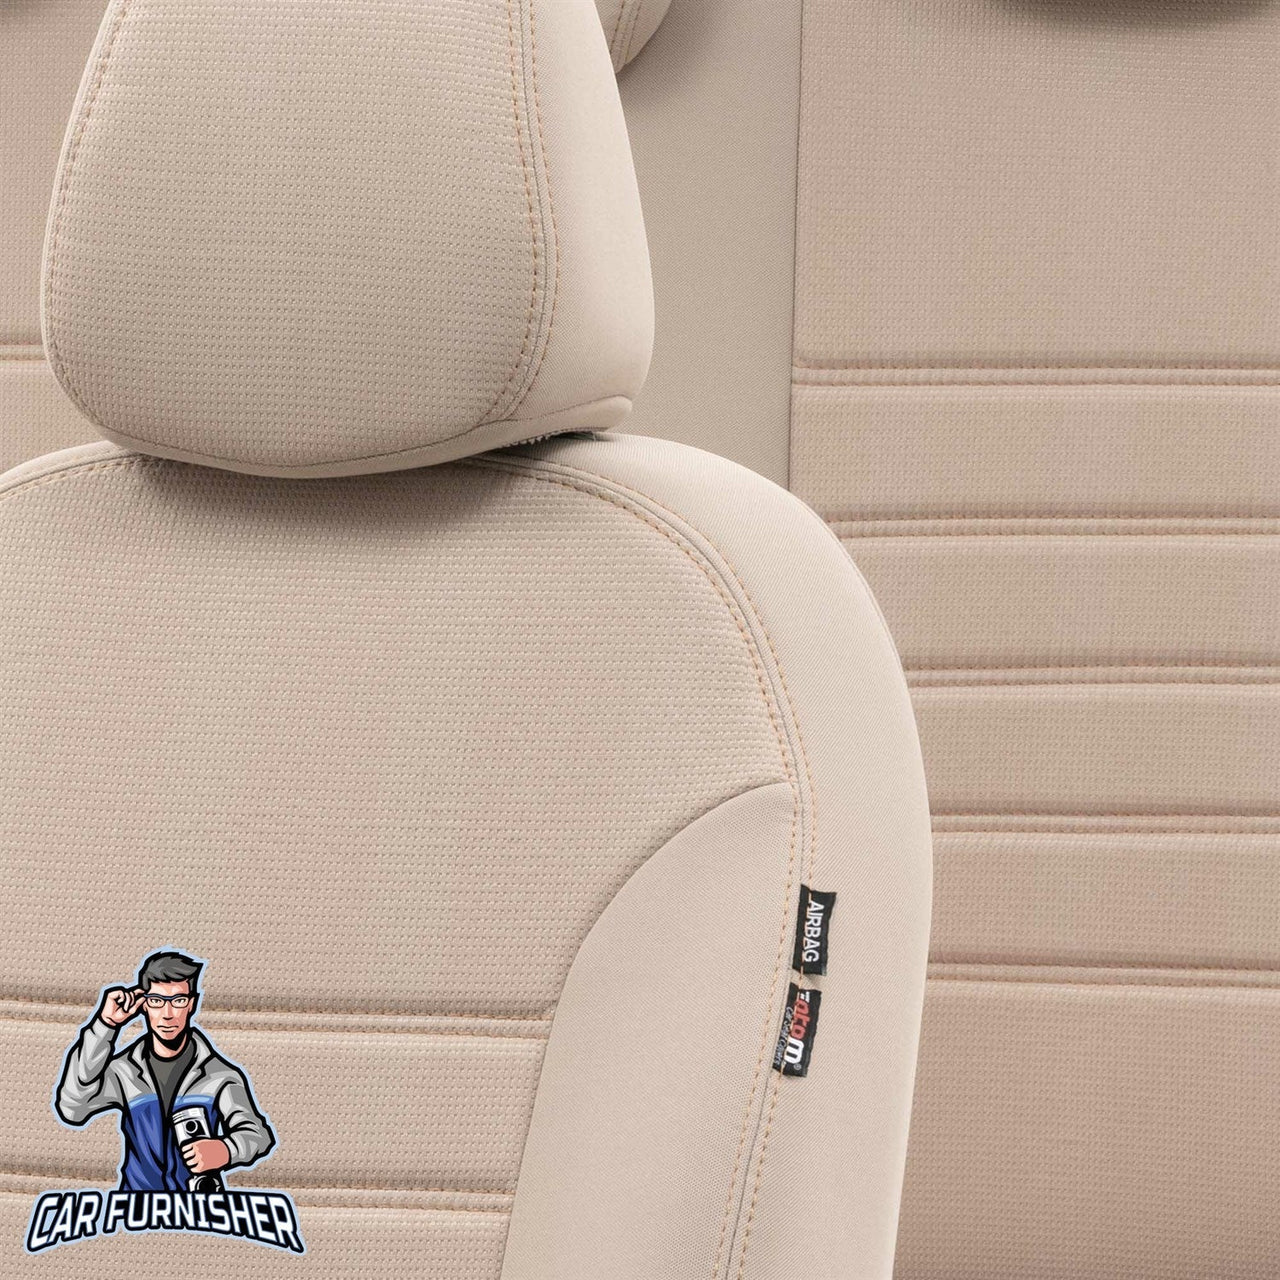 Volvo V70 Seat Cover Original Jacquard Design Beige Jacquard Fabric